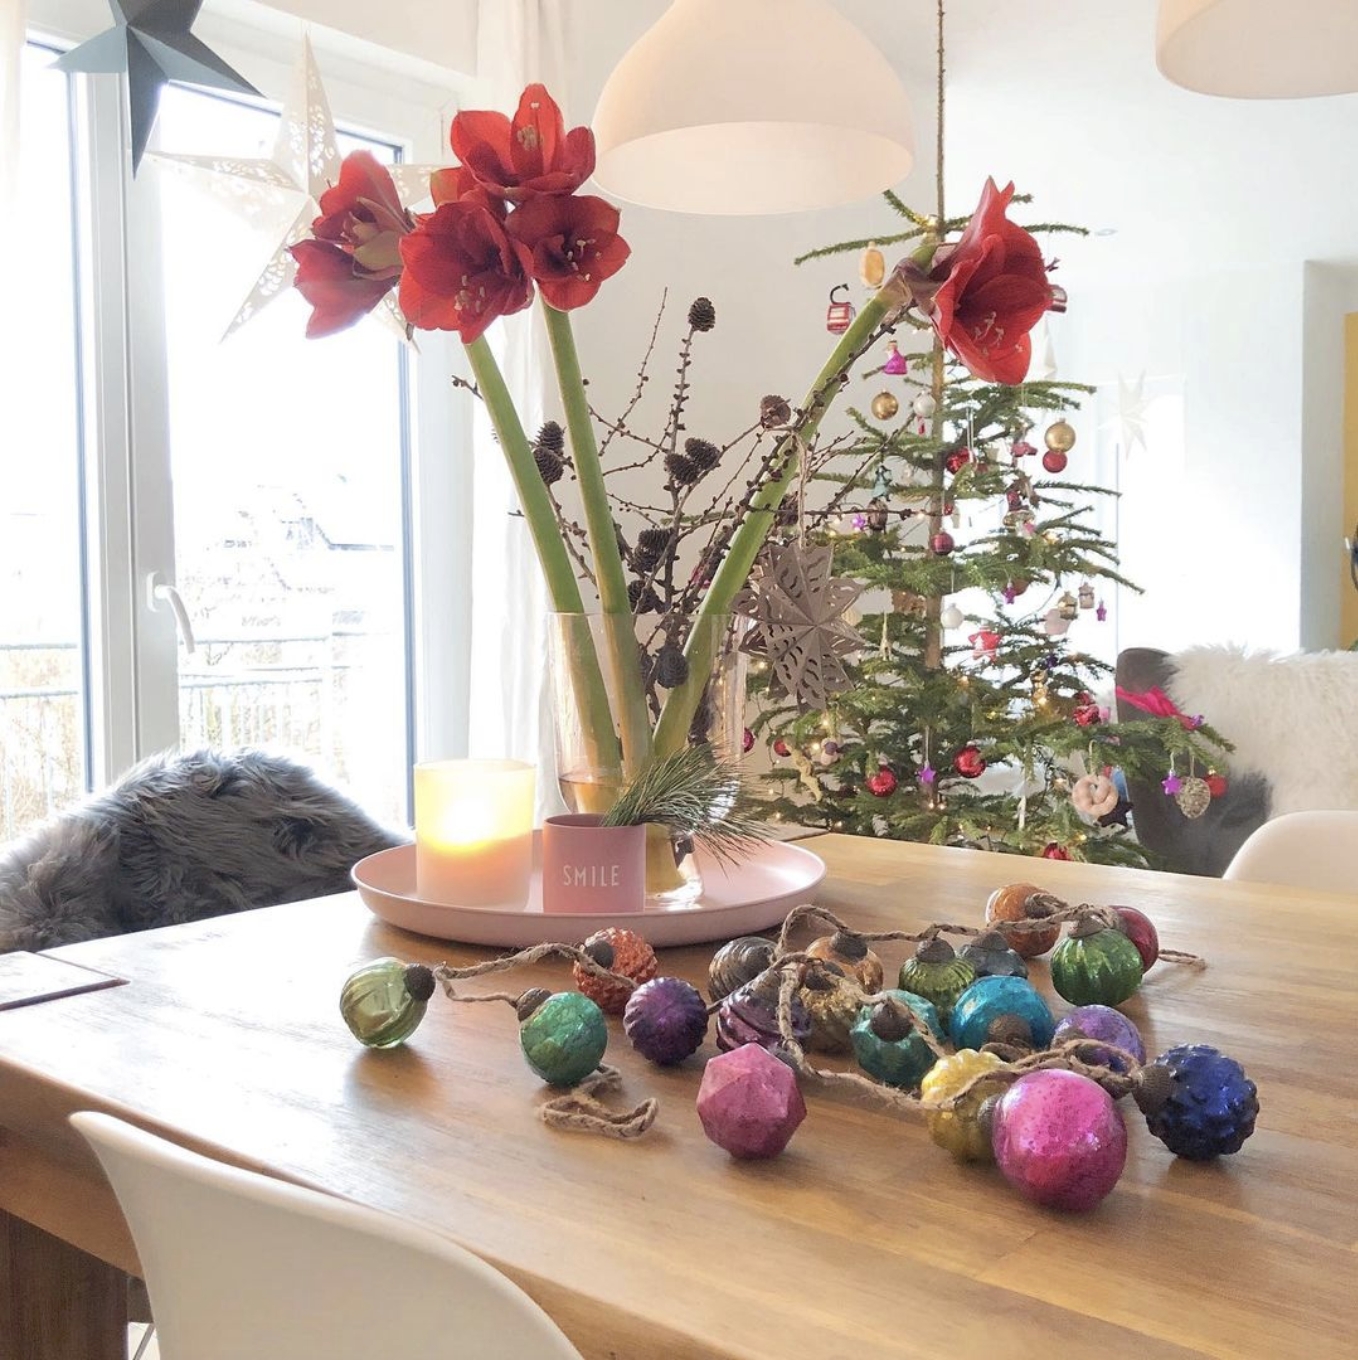 Kein Weihnachten ohne Amaryllis und hier blühen sie besonders schön <3

#amaryllis #livingroom #wohnzimmer